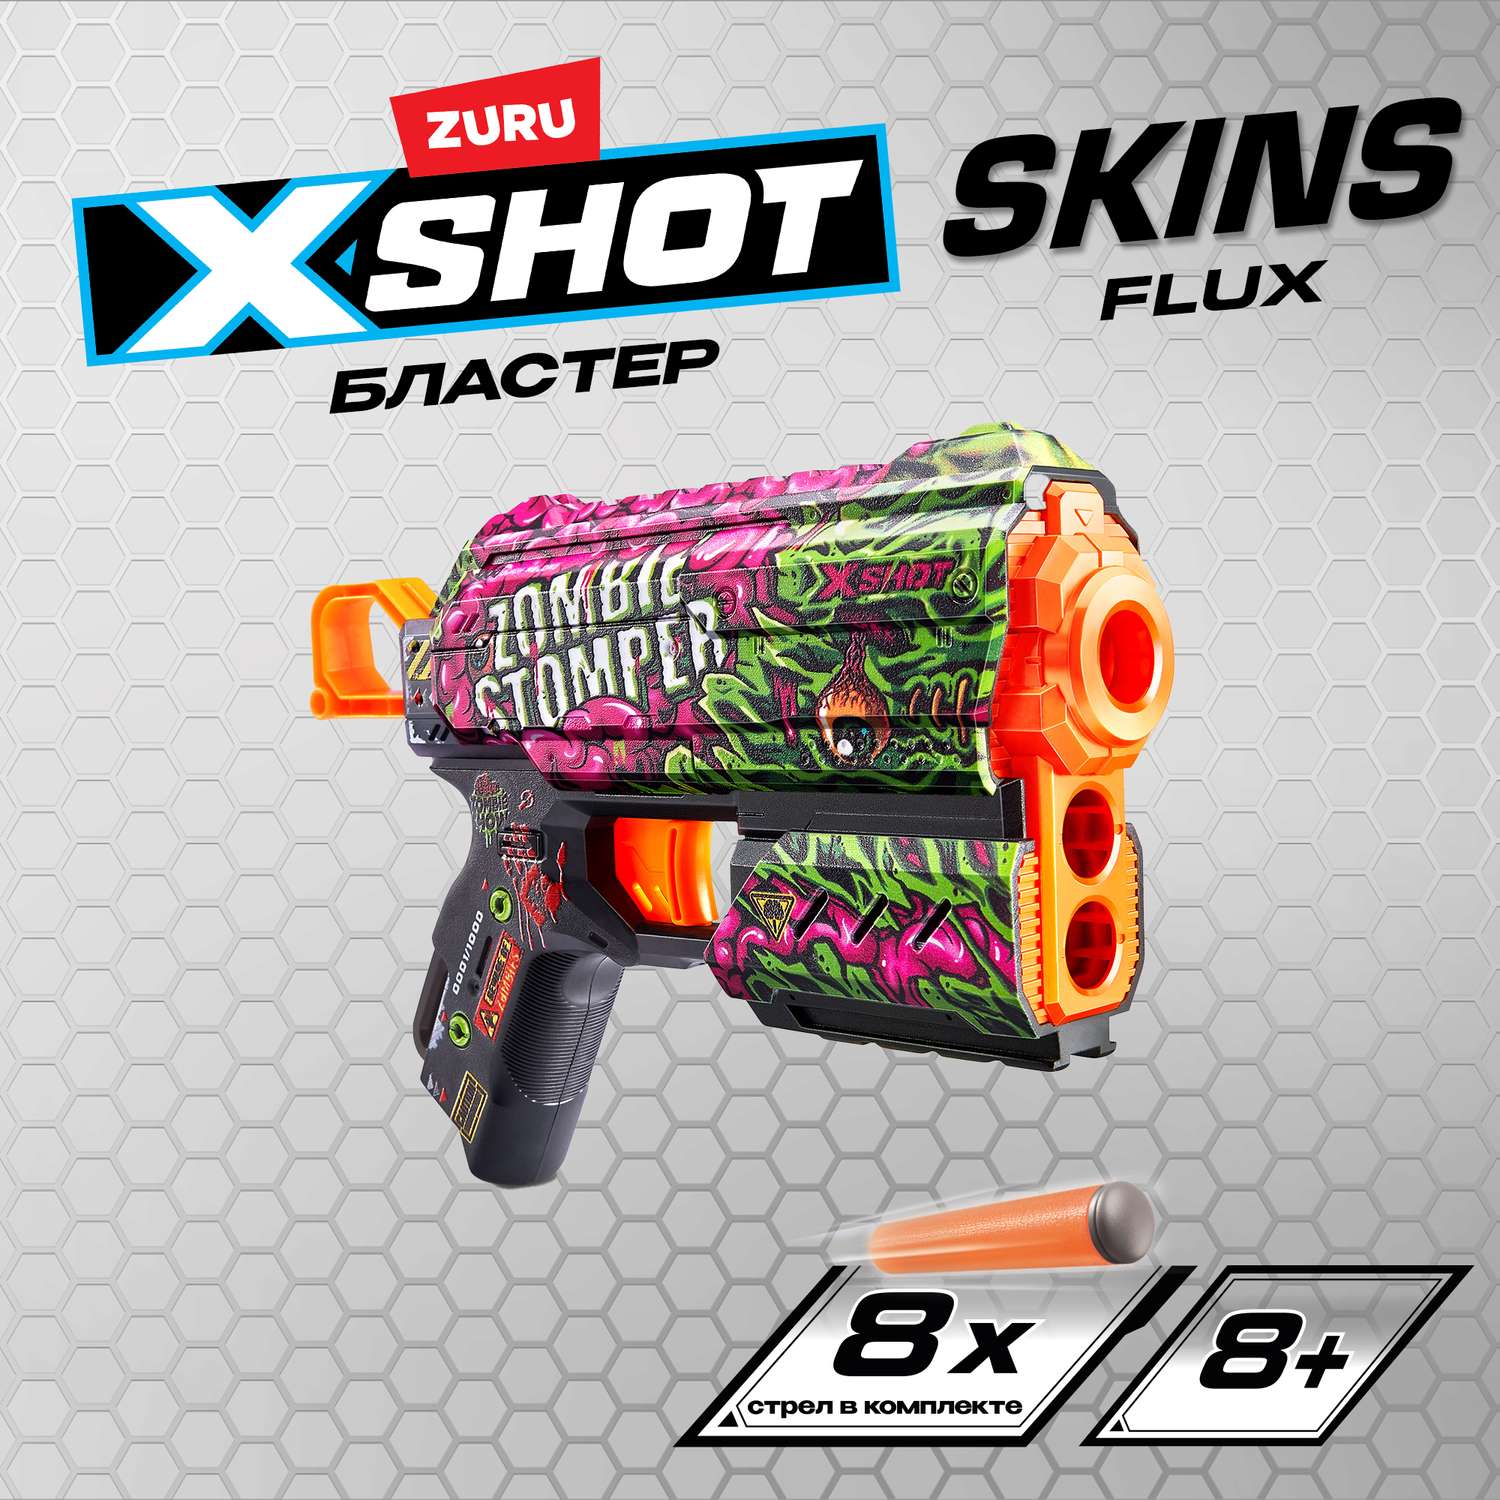 Набор для стрельбы X-SHOT  Скинс флакс Зомби 36516А - фото 1